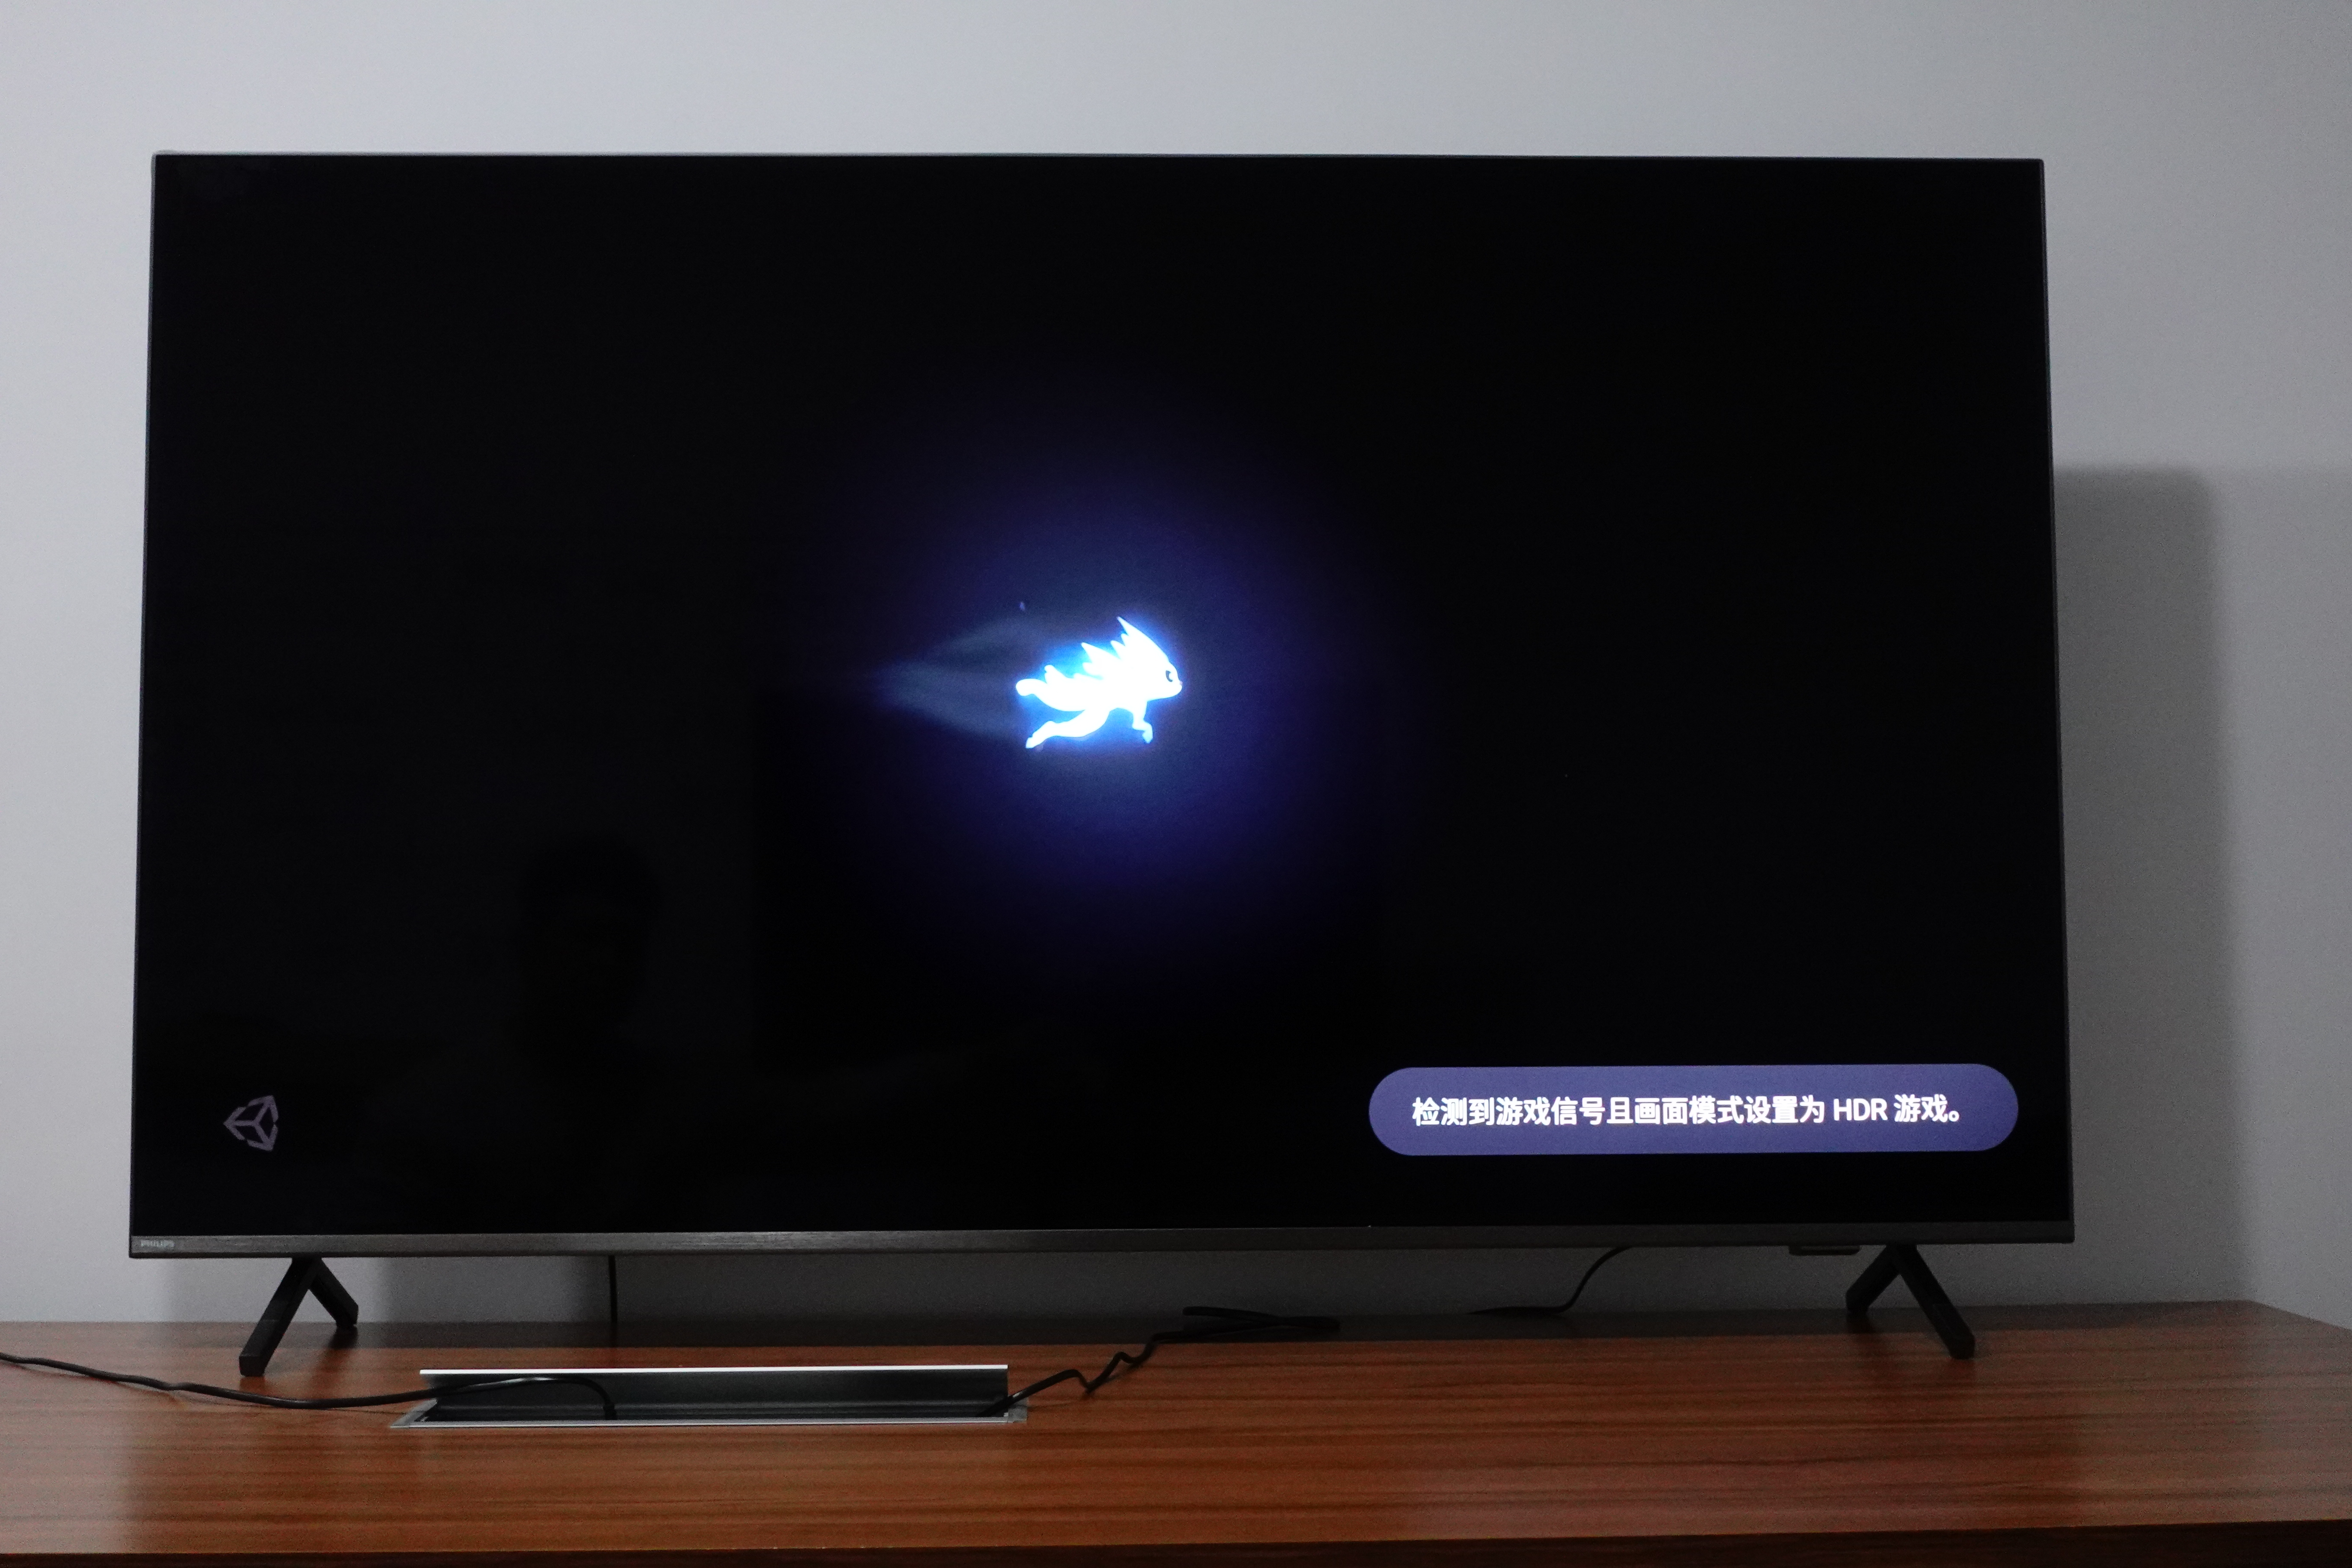 擁有 HDR 功能的遊戲在啟動後，電視也會自動開啟 HDR